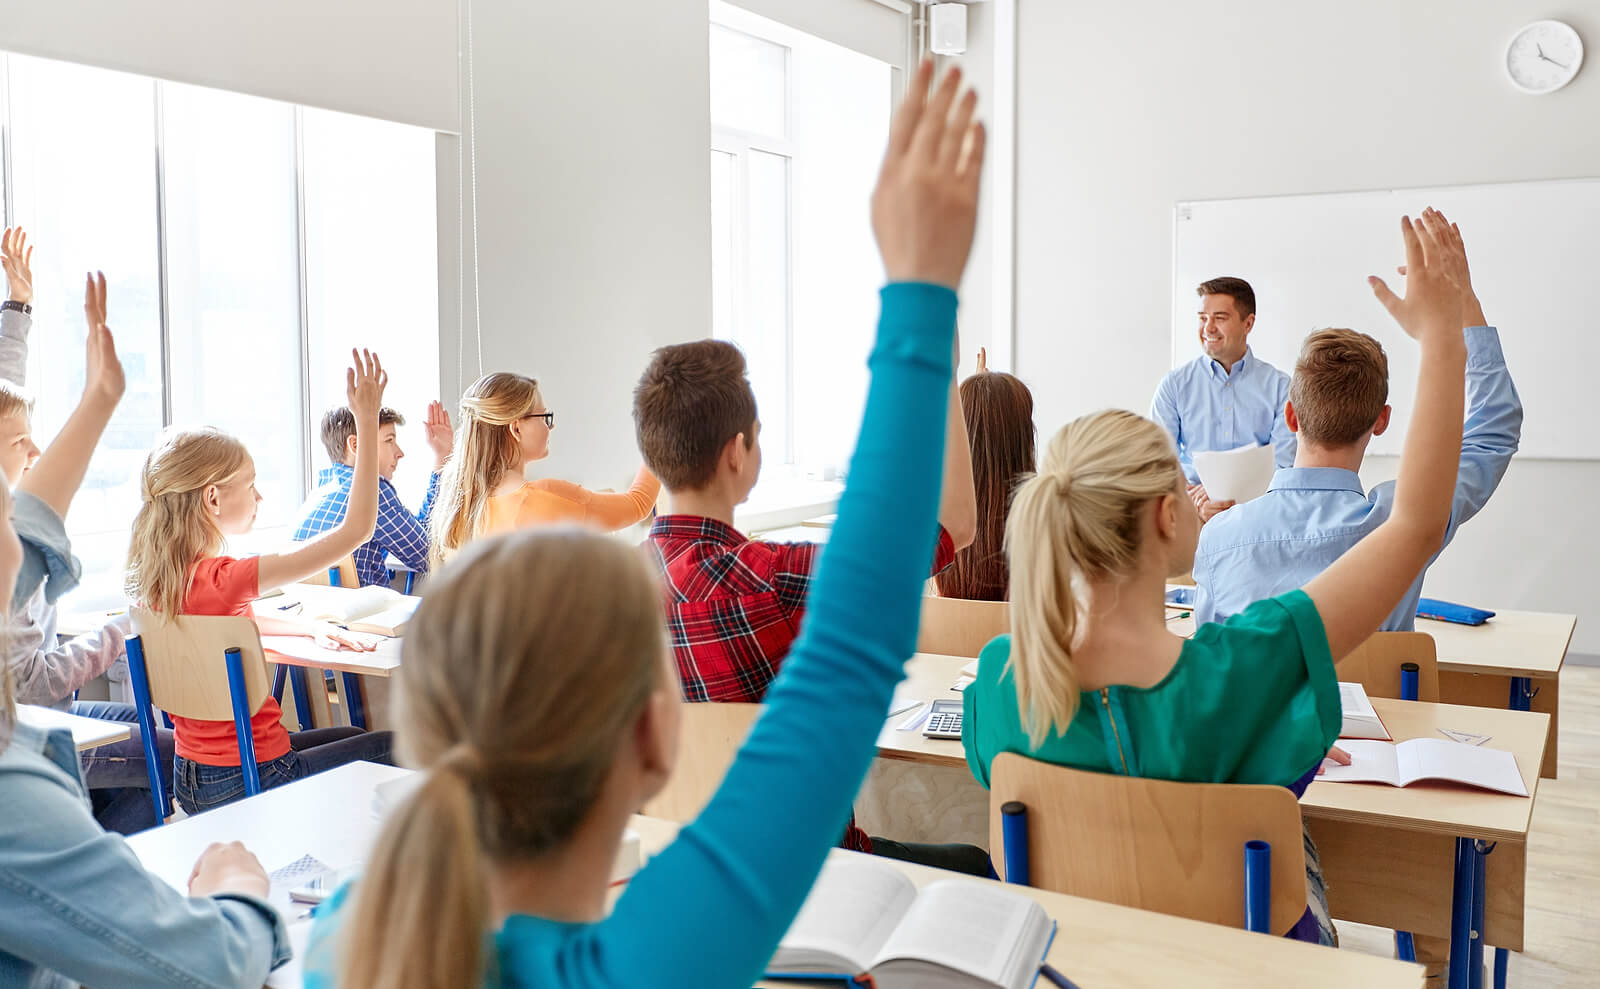 Gli studenti con le mani alzate per rispondere all'insegnante in classe.